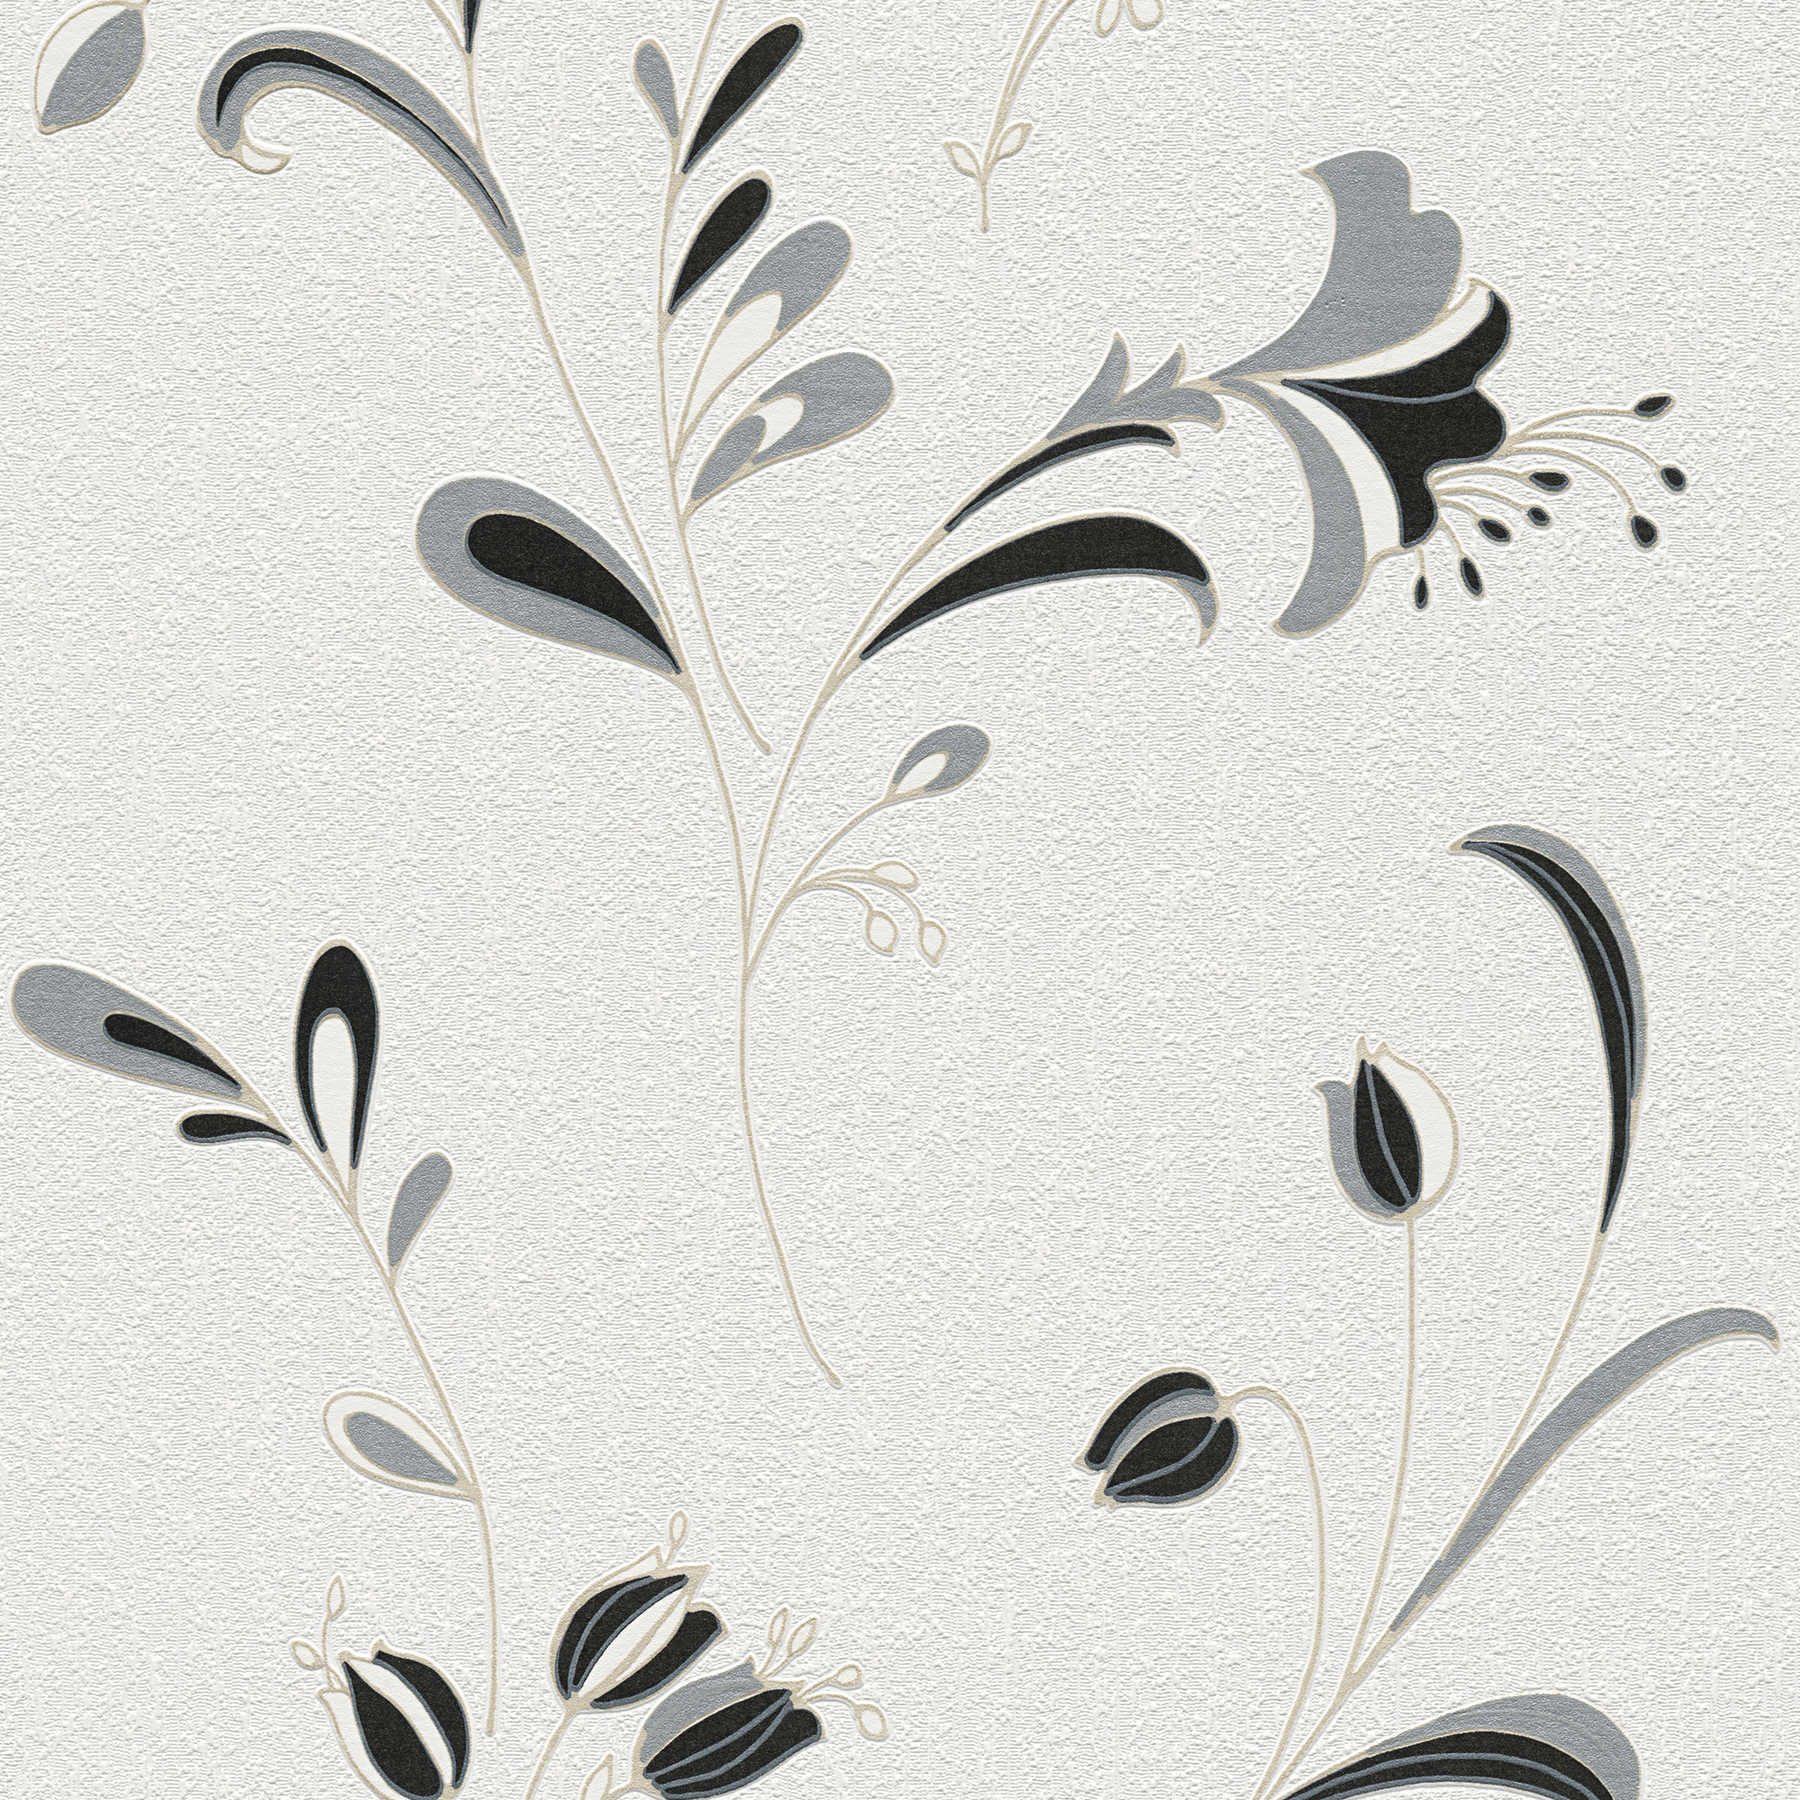             Tapete Blumenmotiv, Silber-Akzente & Strukturmusterung – Schwarz, Weiß, Silber
        